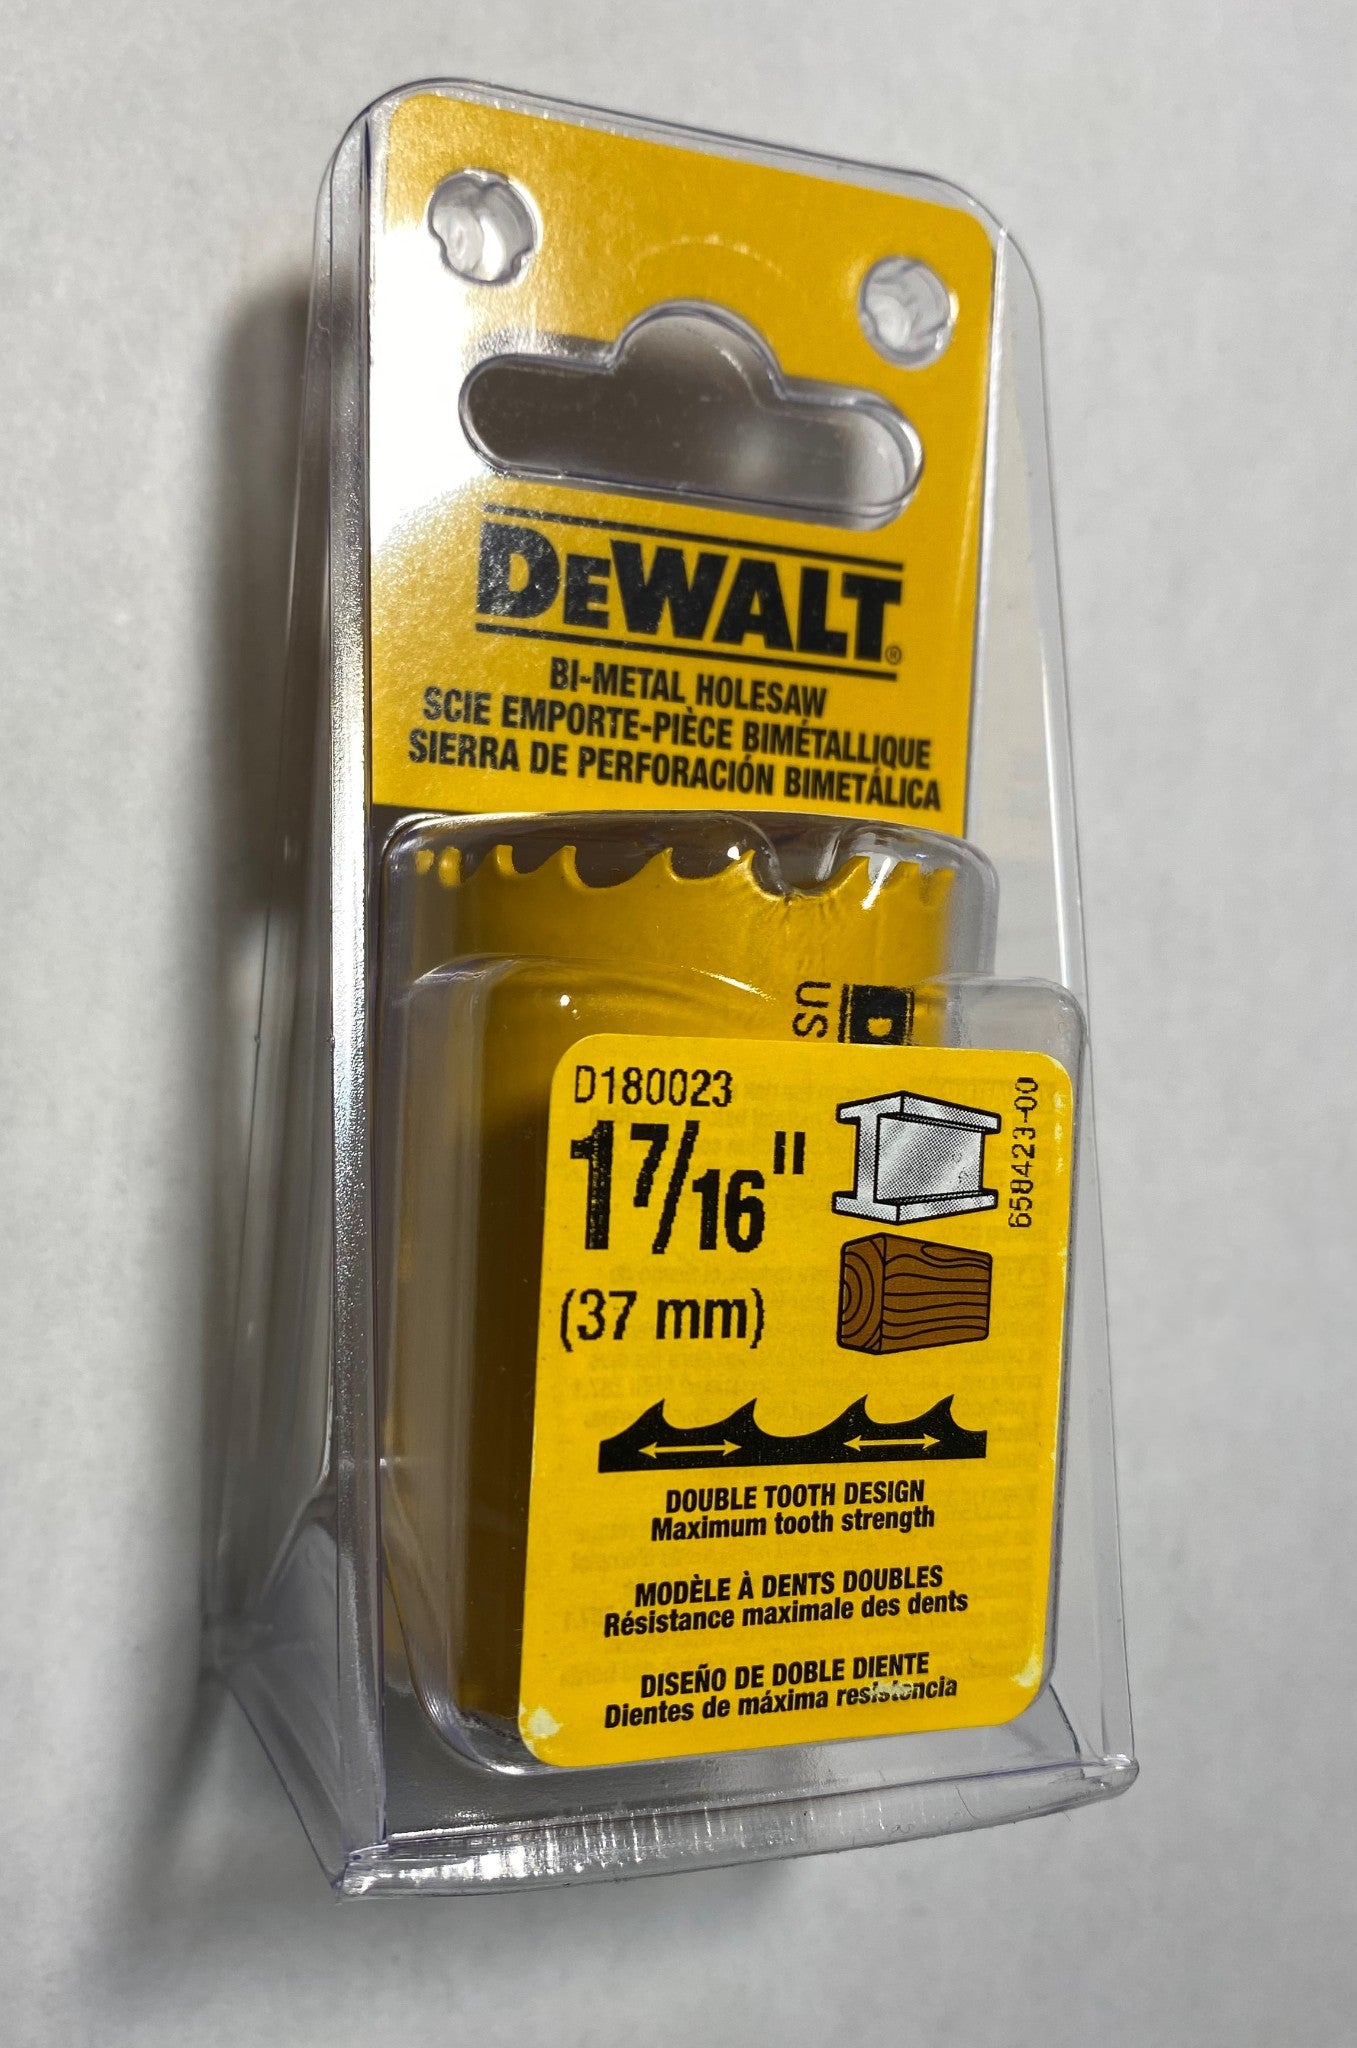 DEWALT D180023 1-7/16" (37MM) BI-METAL HOLE SAW USA